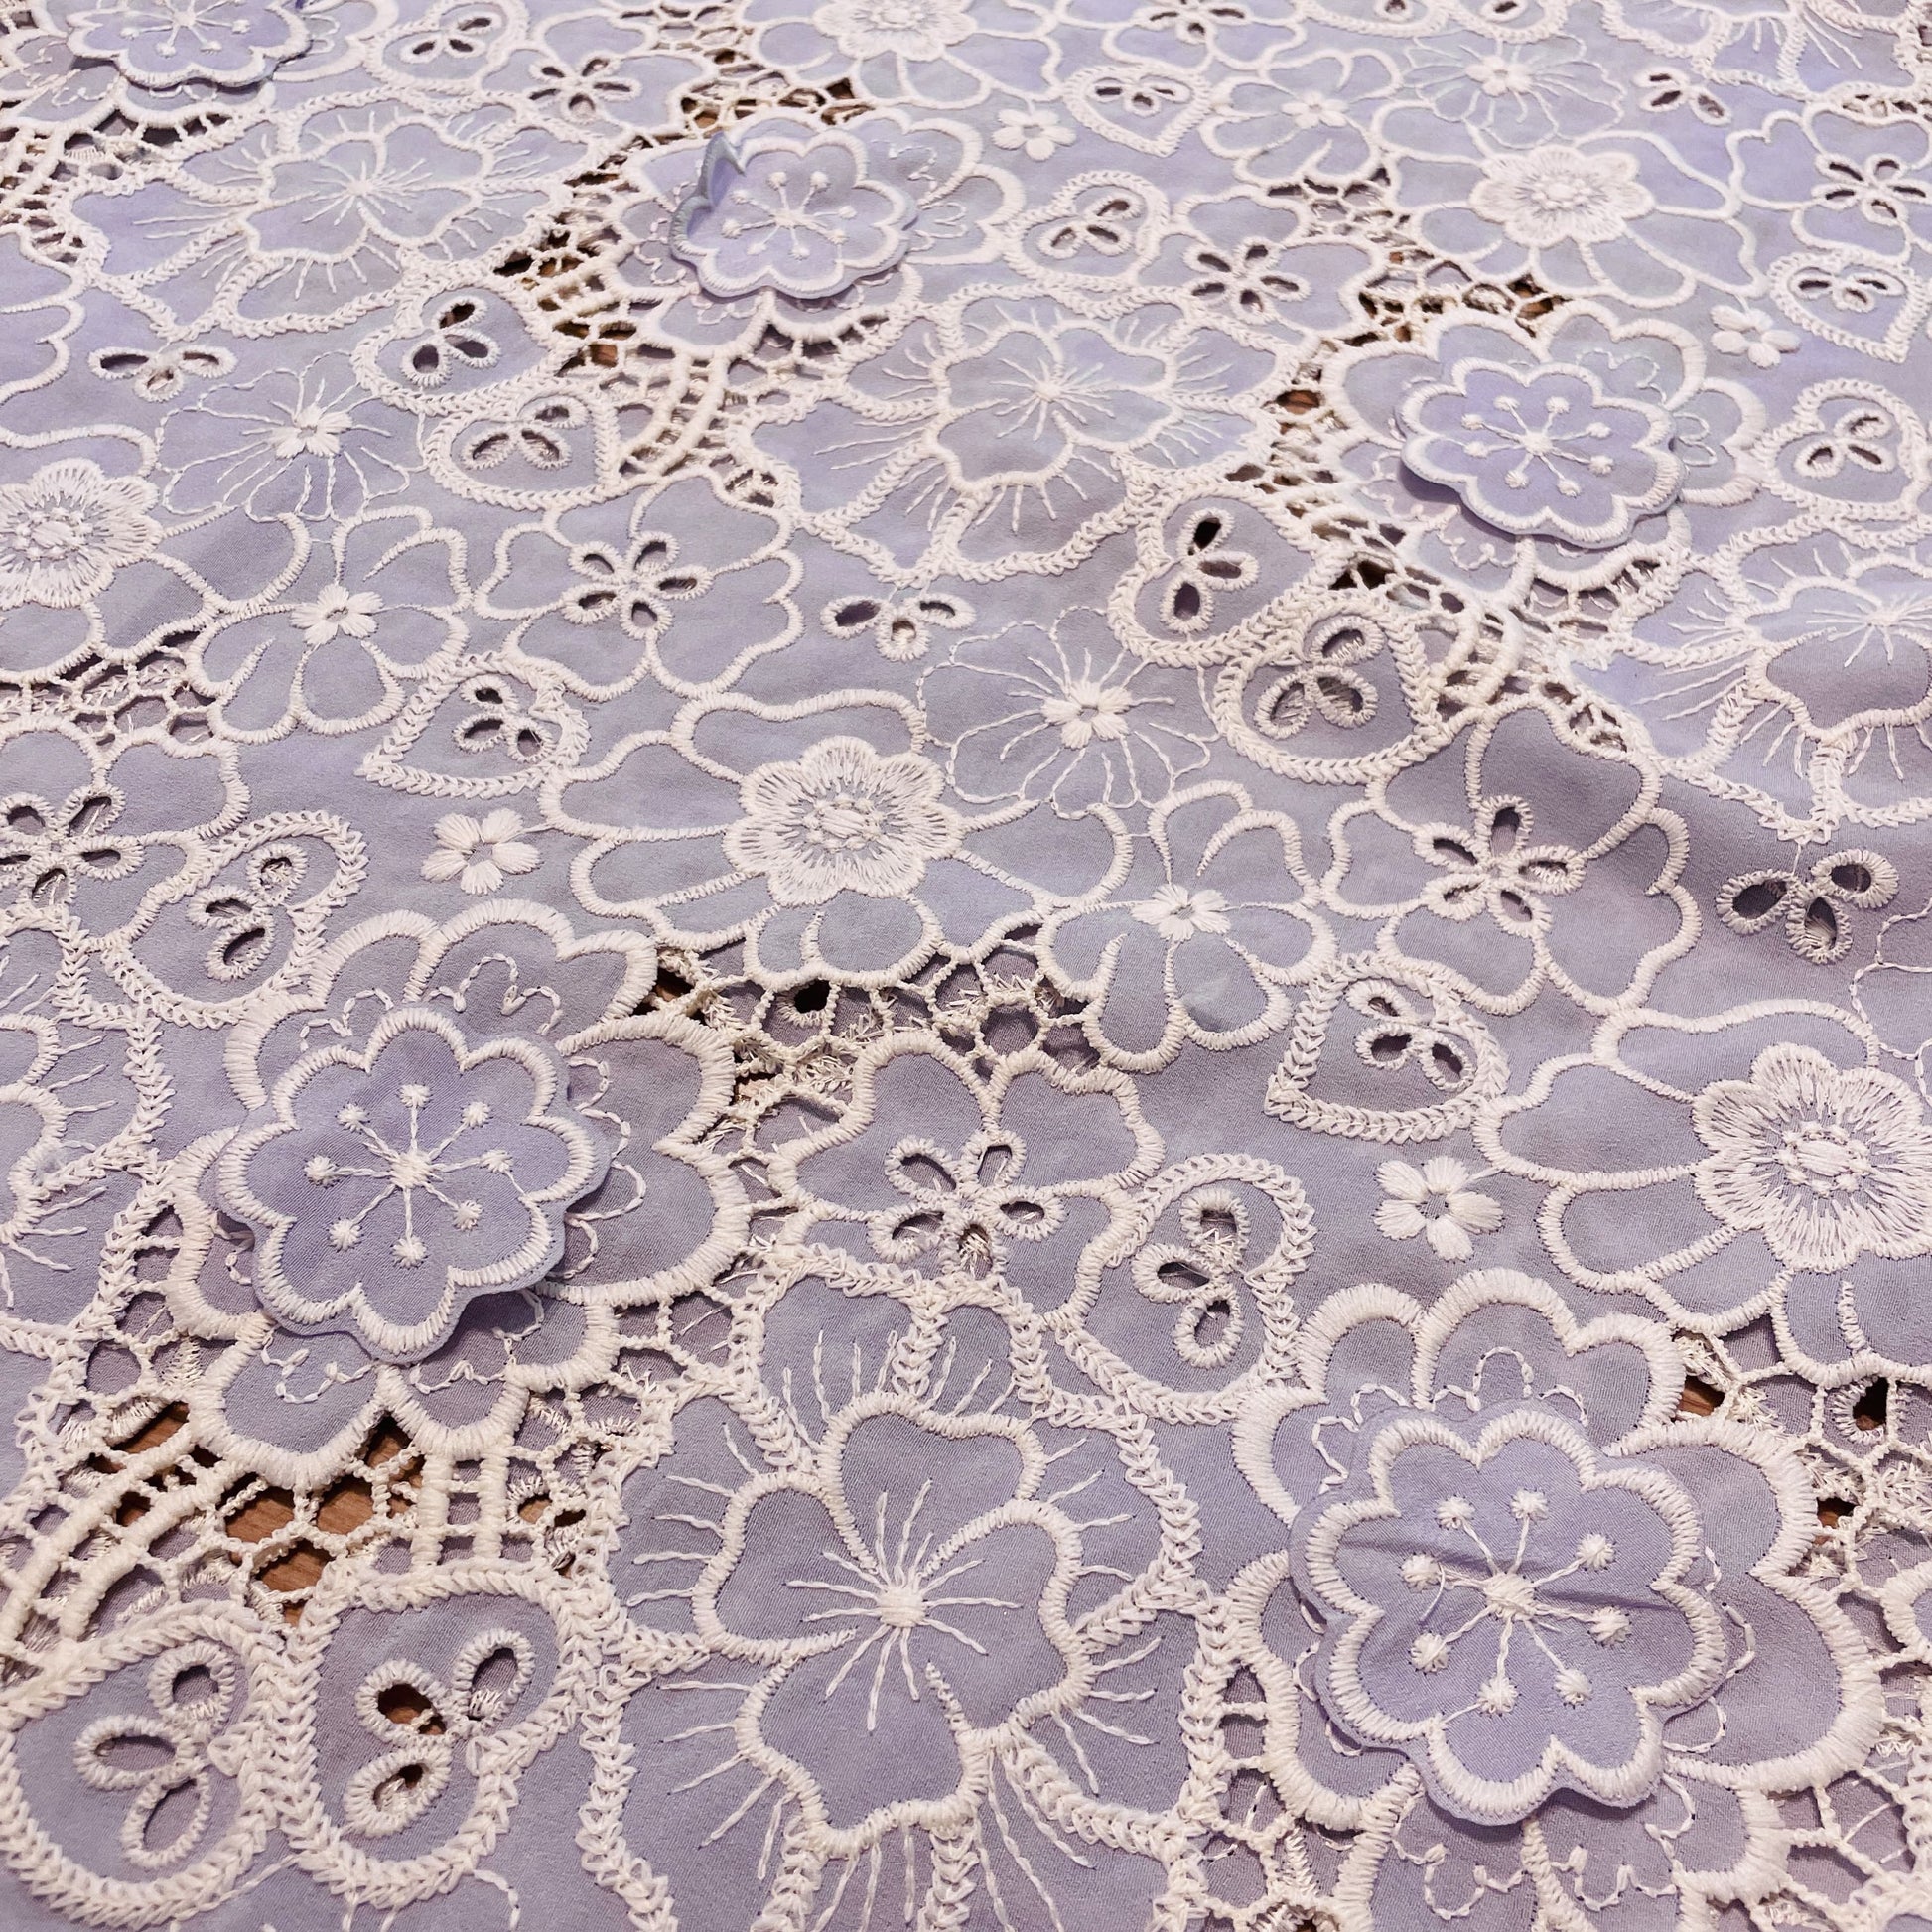 Premium Lavender White 3D Embroidery Schiffli Crepe Fabric